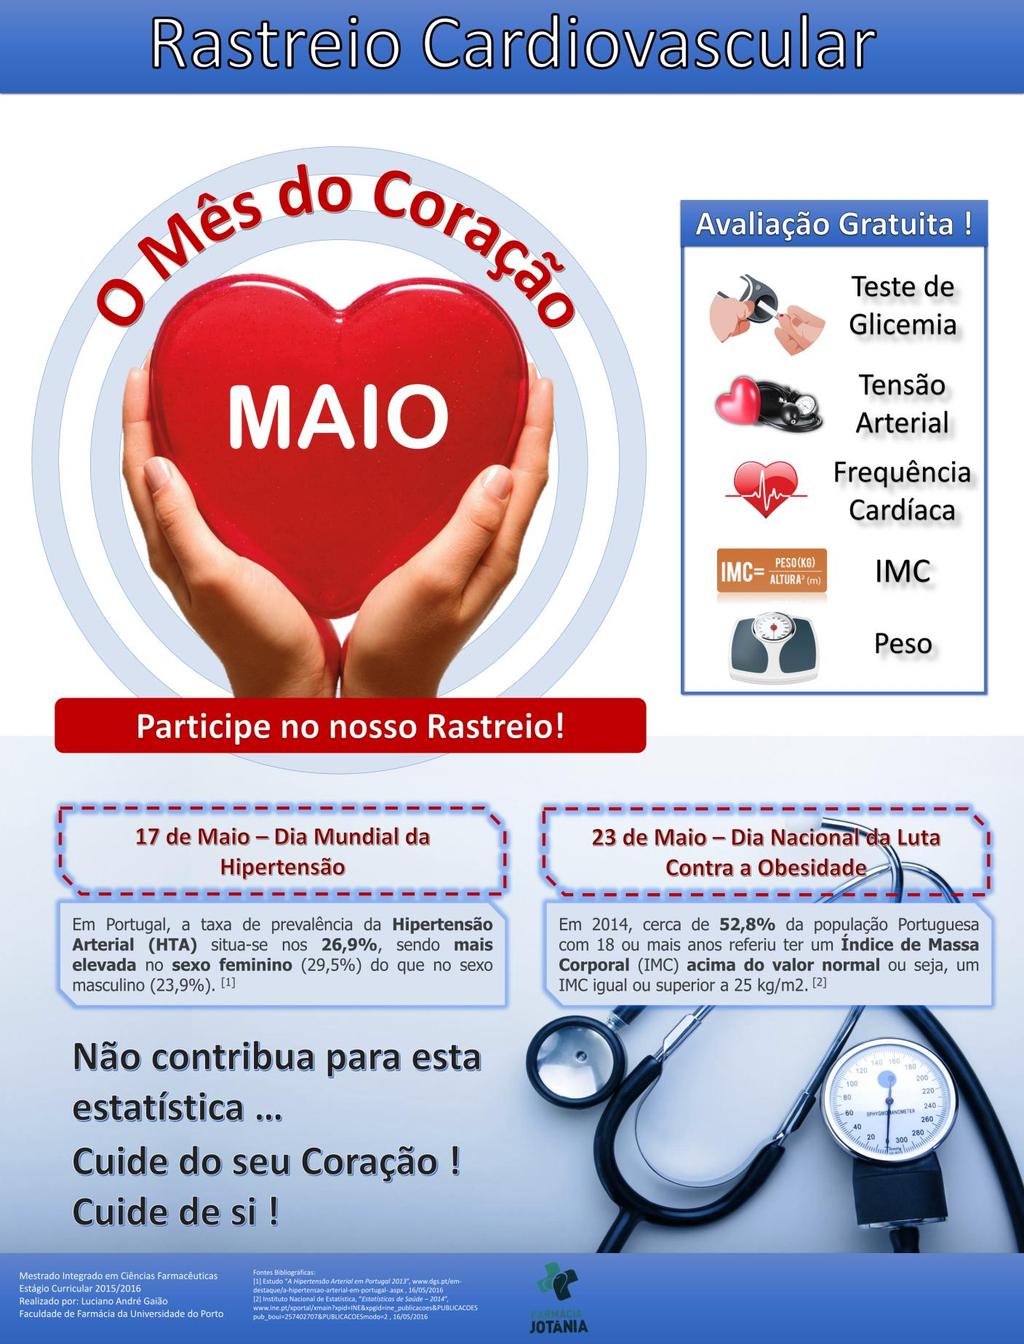 Anexo 6 - Poster sobre o Rastreio Cardiovascular Relatório de